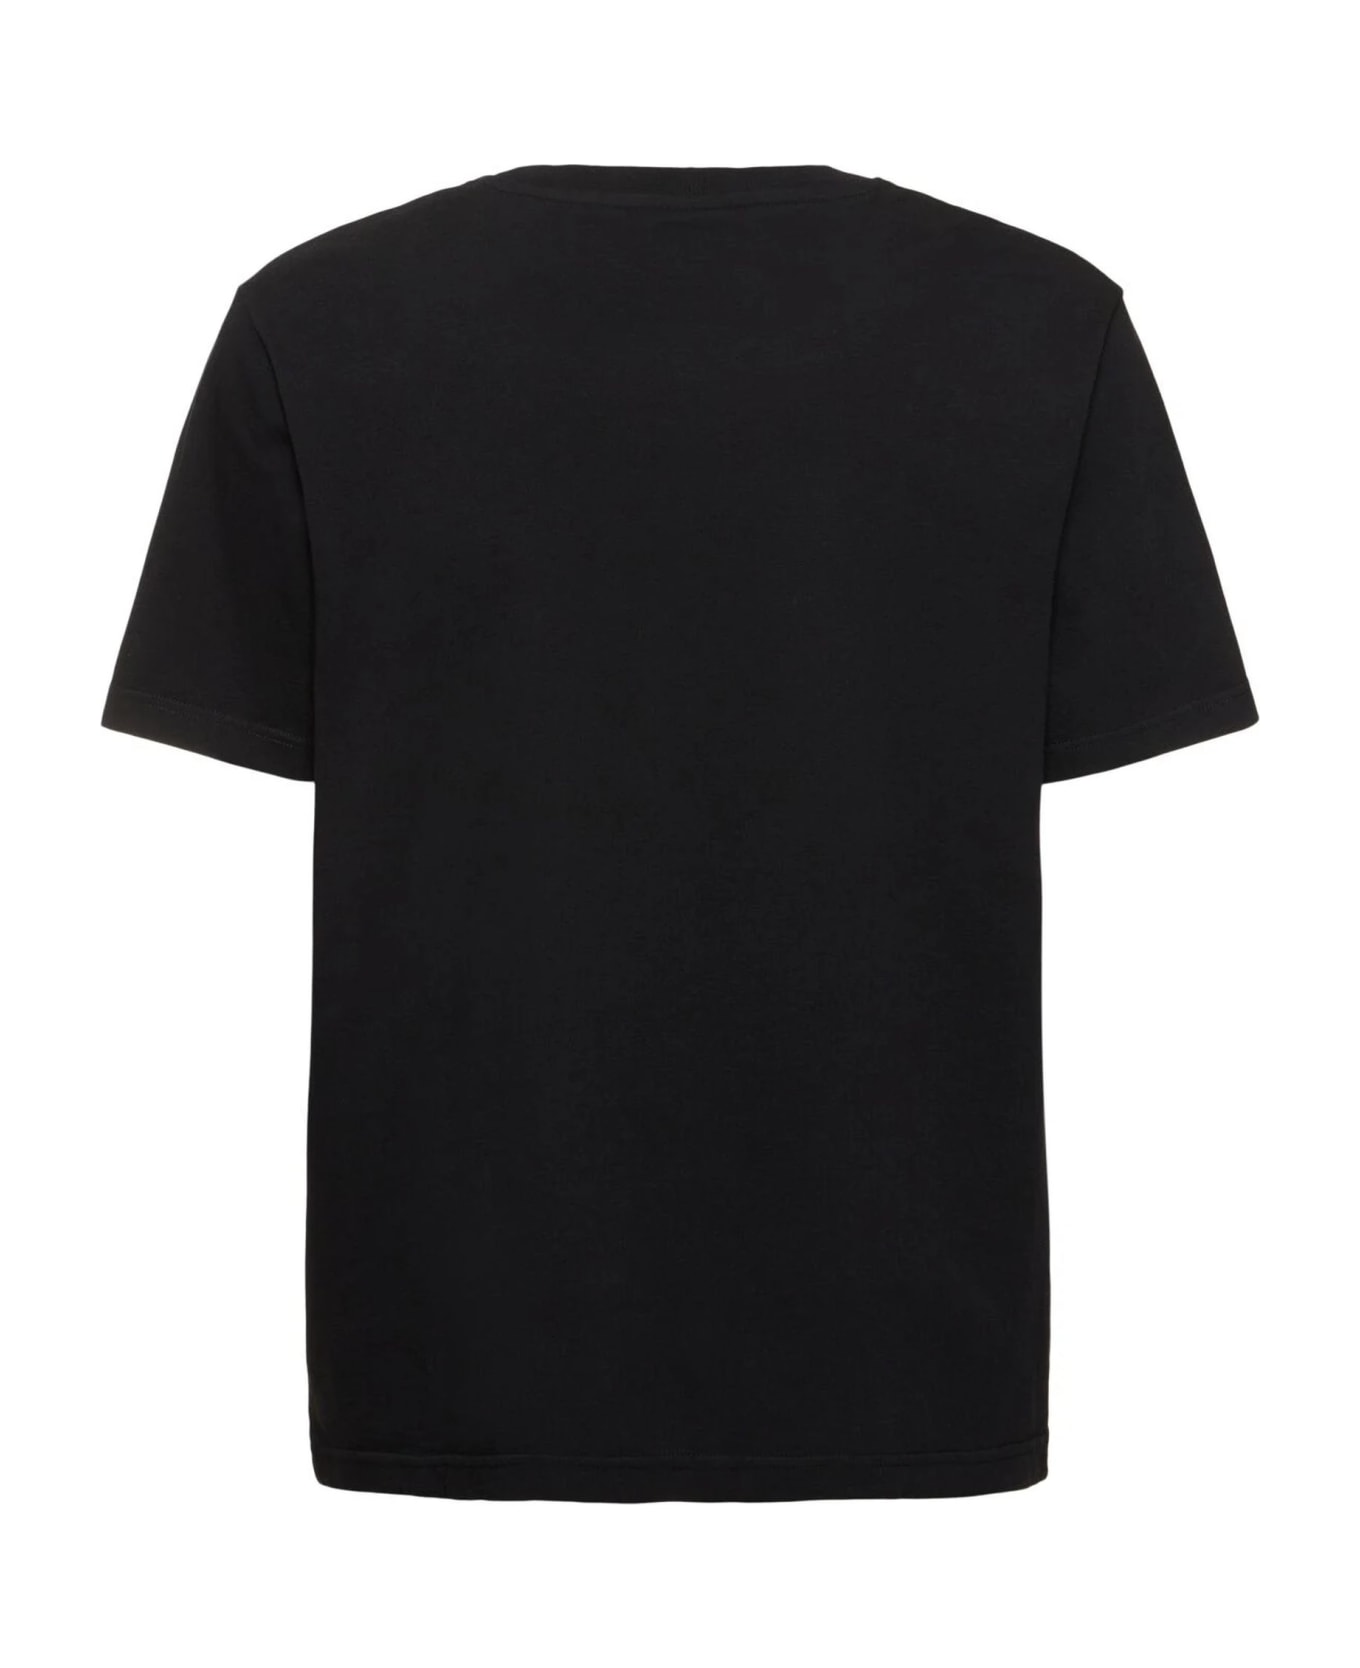 Maison Kitsuné Maison Kitsune' T-shirts And Polos Black - Black シャツ